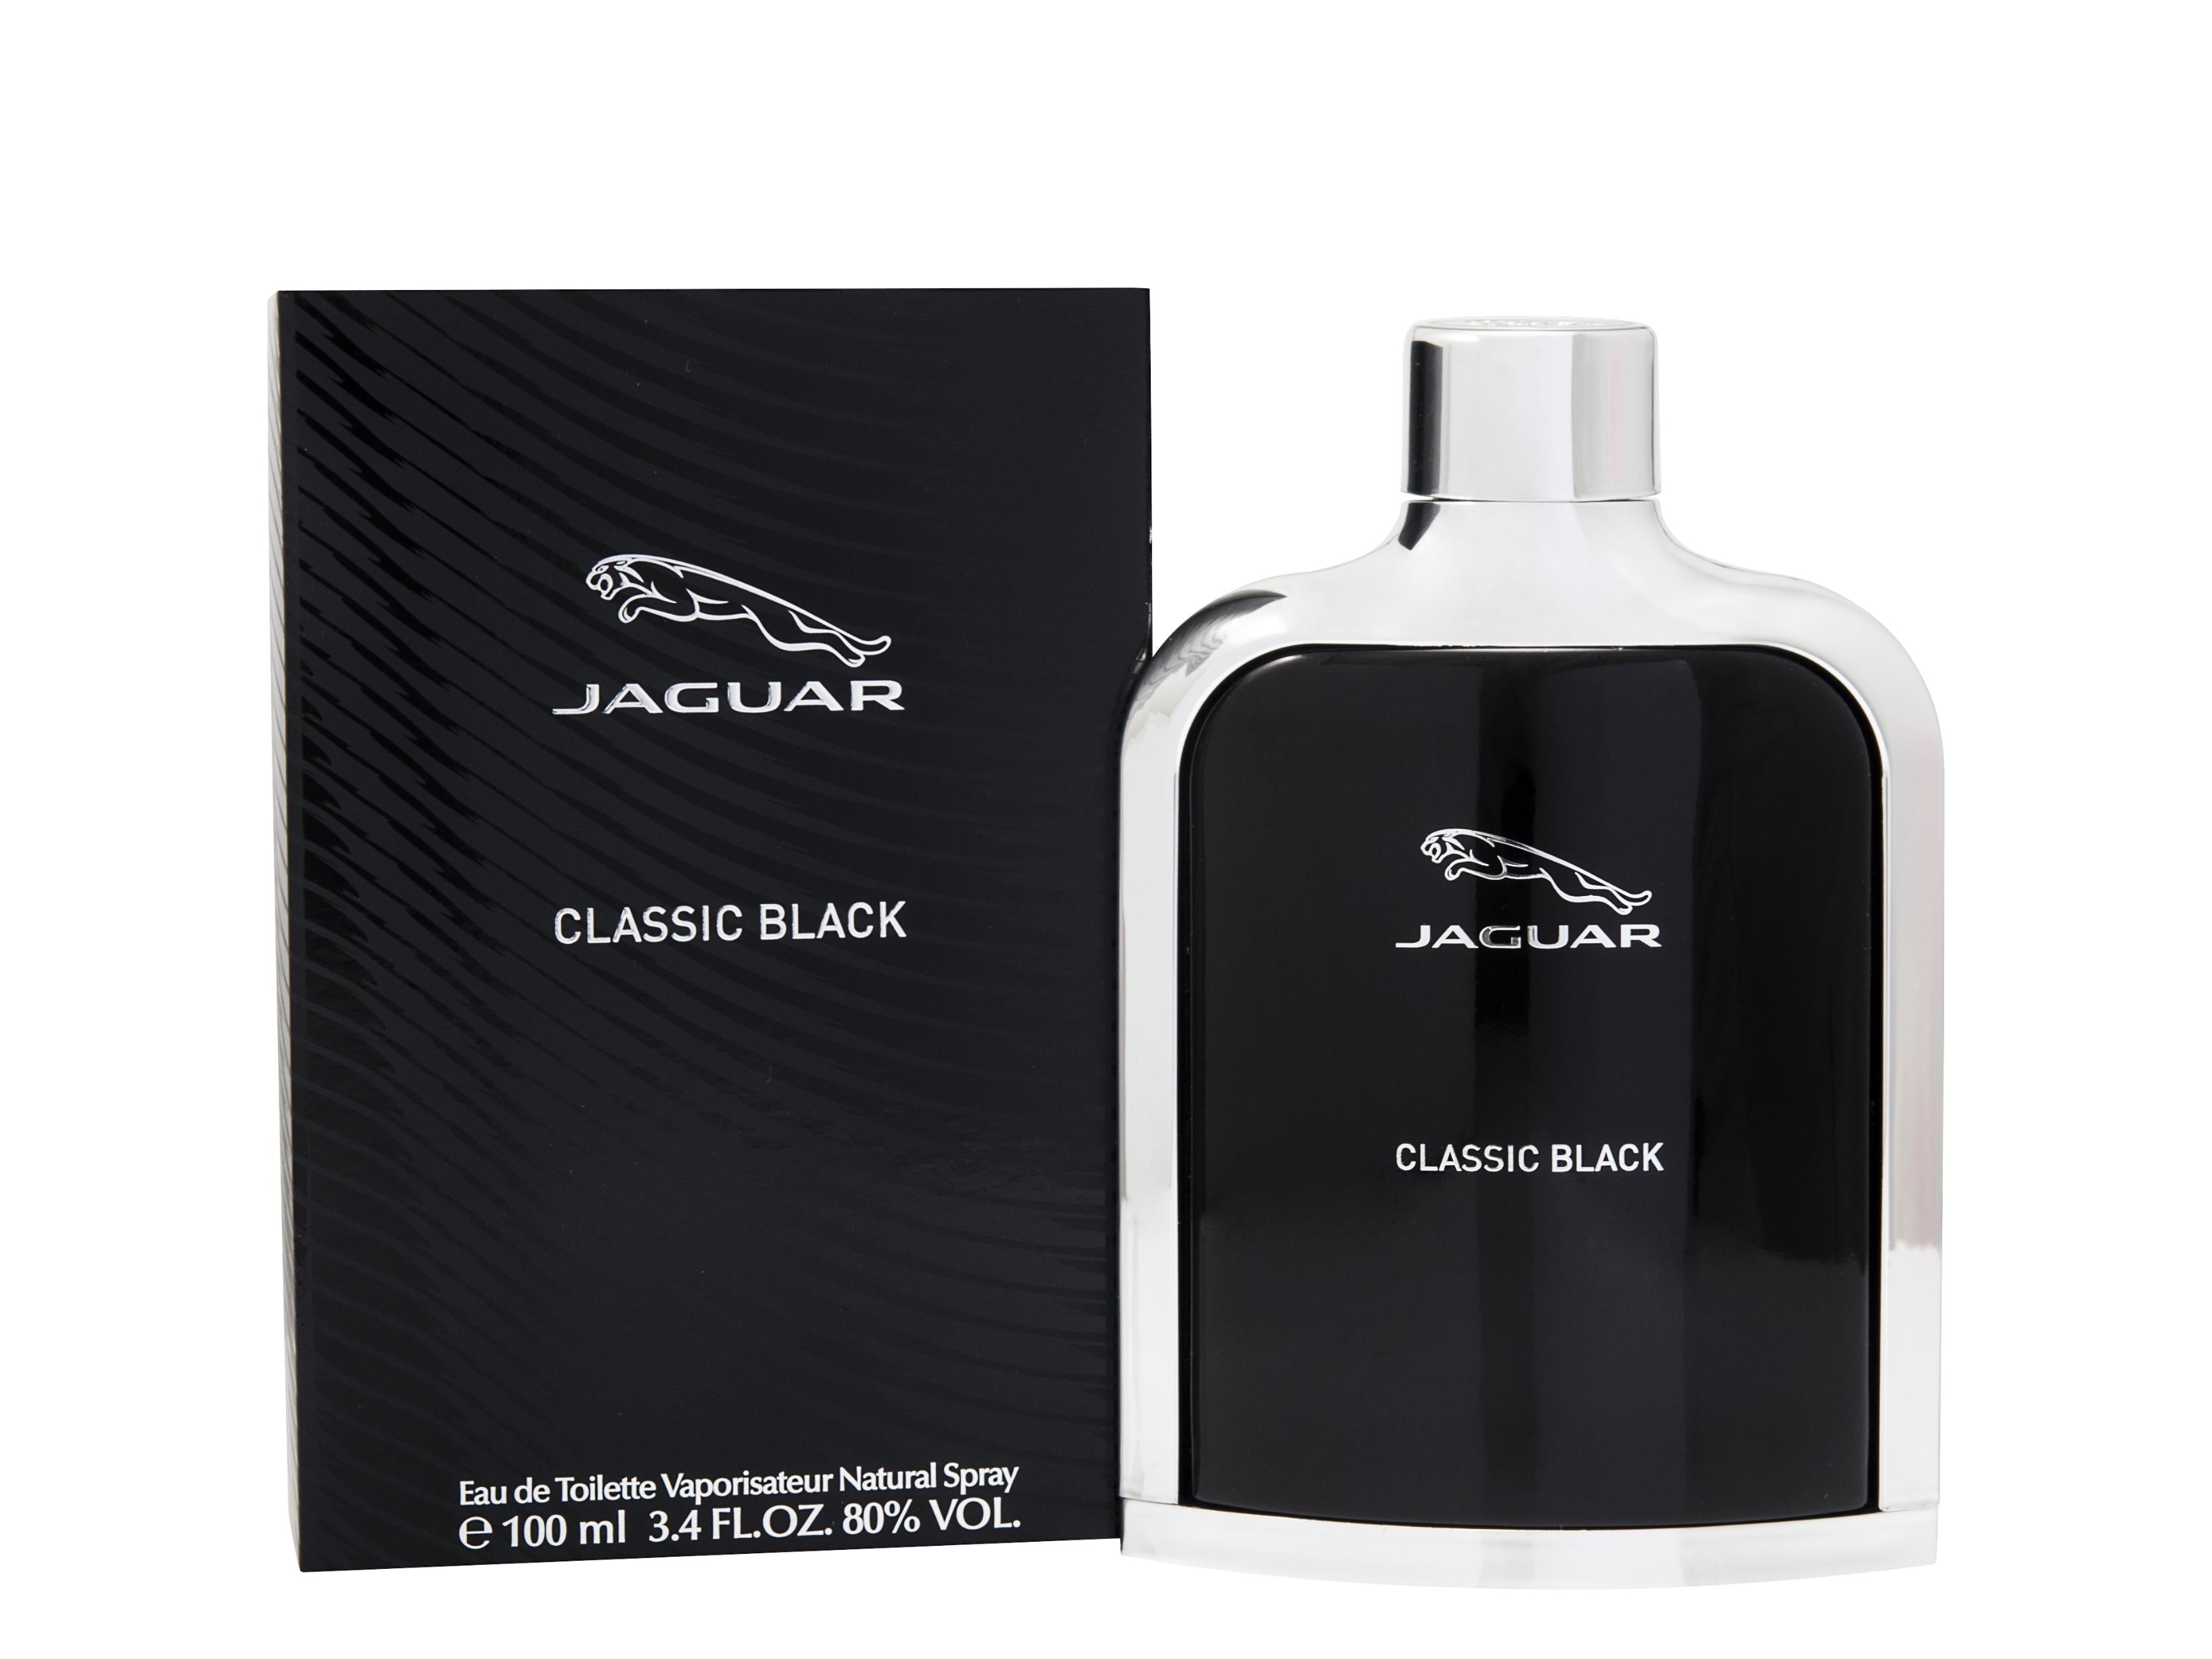 View Jaguar Classic Black Eau de Toilette 100ml Spray information